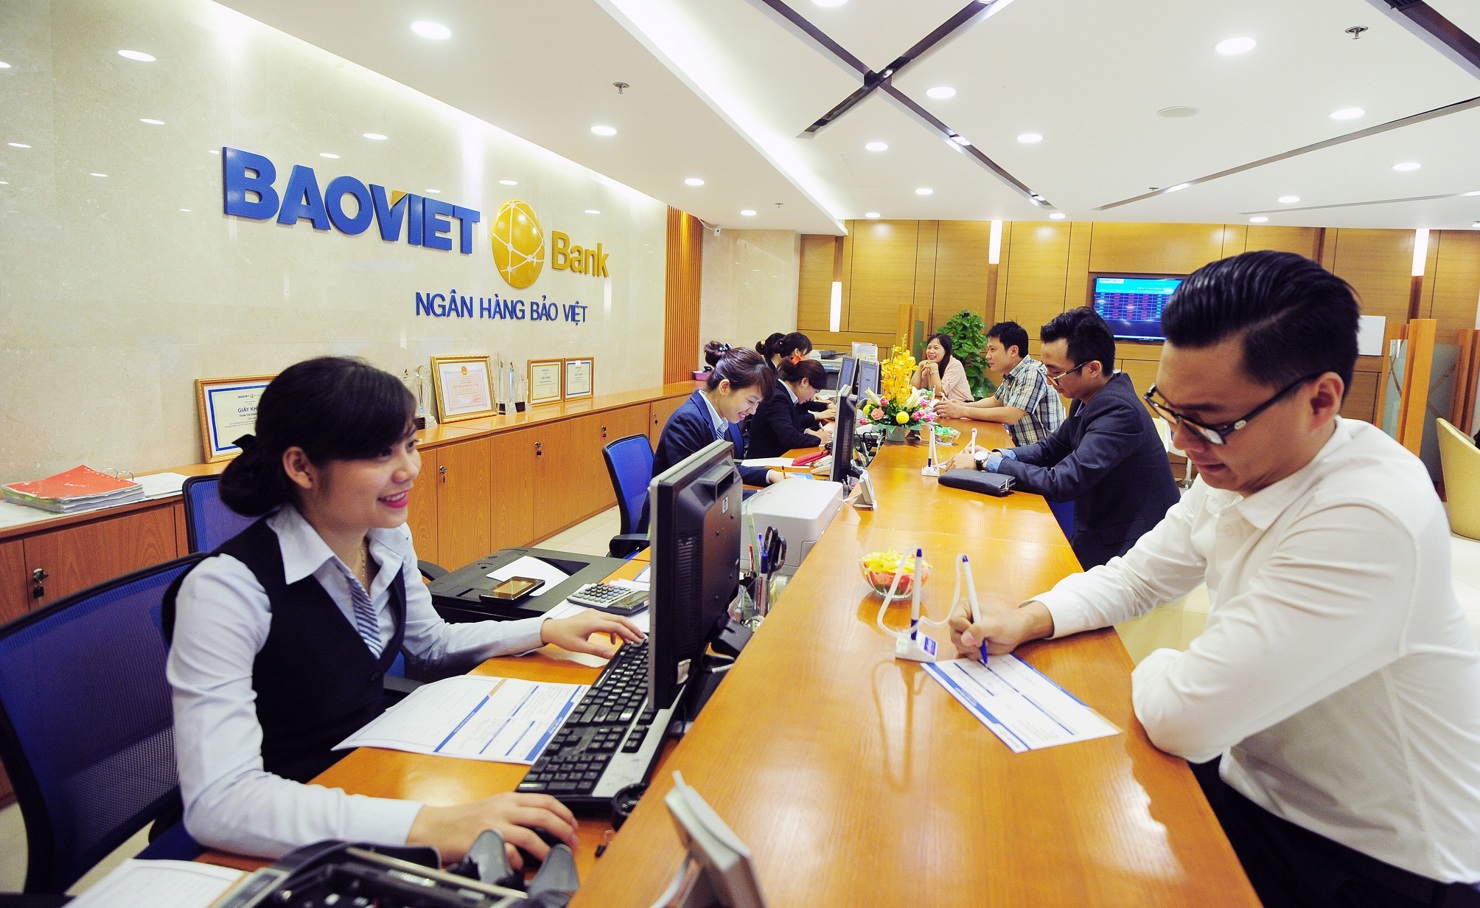 BAOVIET Bank vừa ra mắt hai sản phẩm tiết kiệm mới: Gom lộc phát tài Online và Chắp cánh tương lai nhằm gia tăng thêm dịch vụ và tiện ích phục vụ cho khách hàng. Nguồn: baovietbank.vn